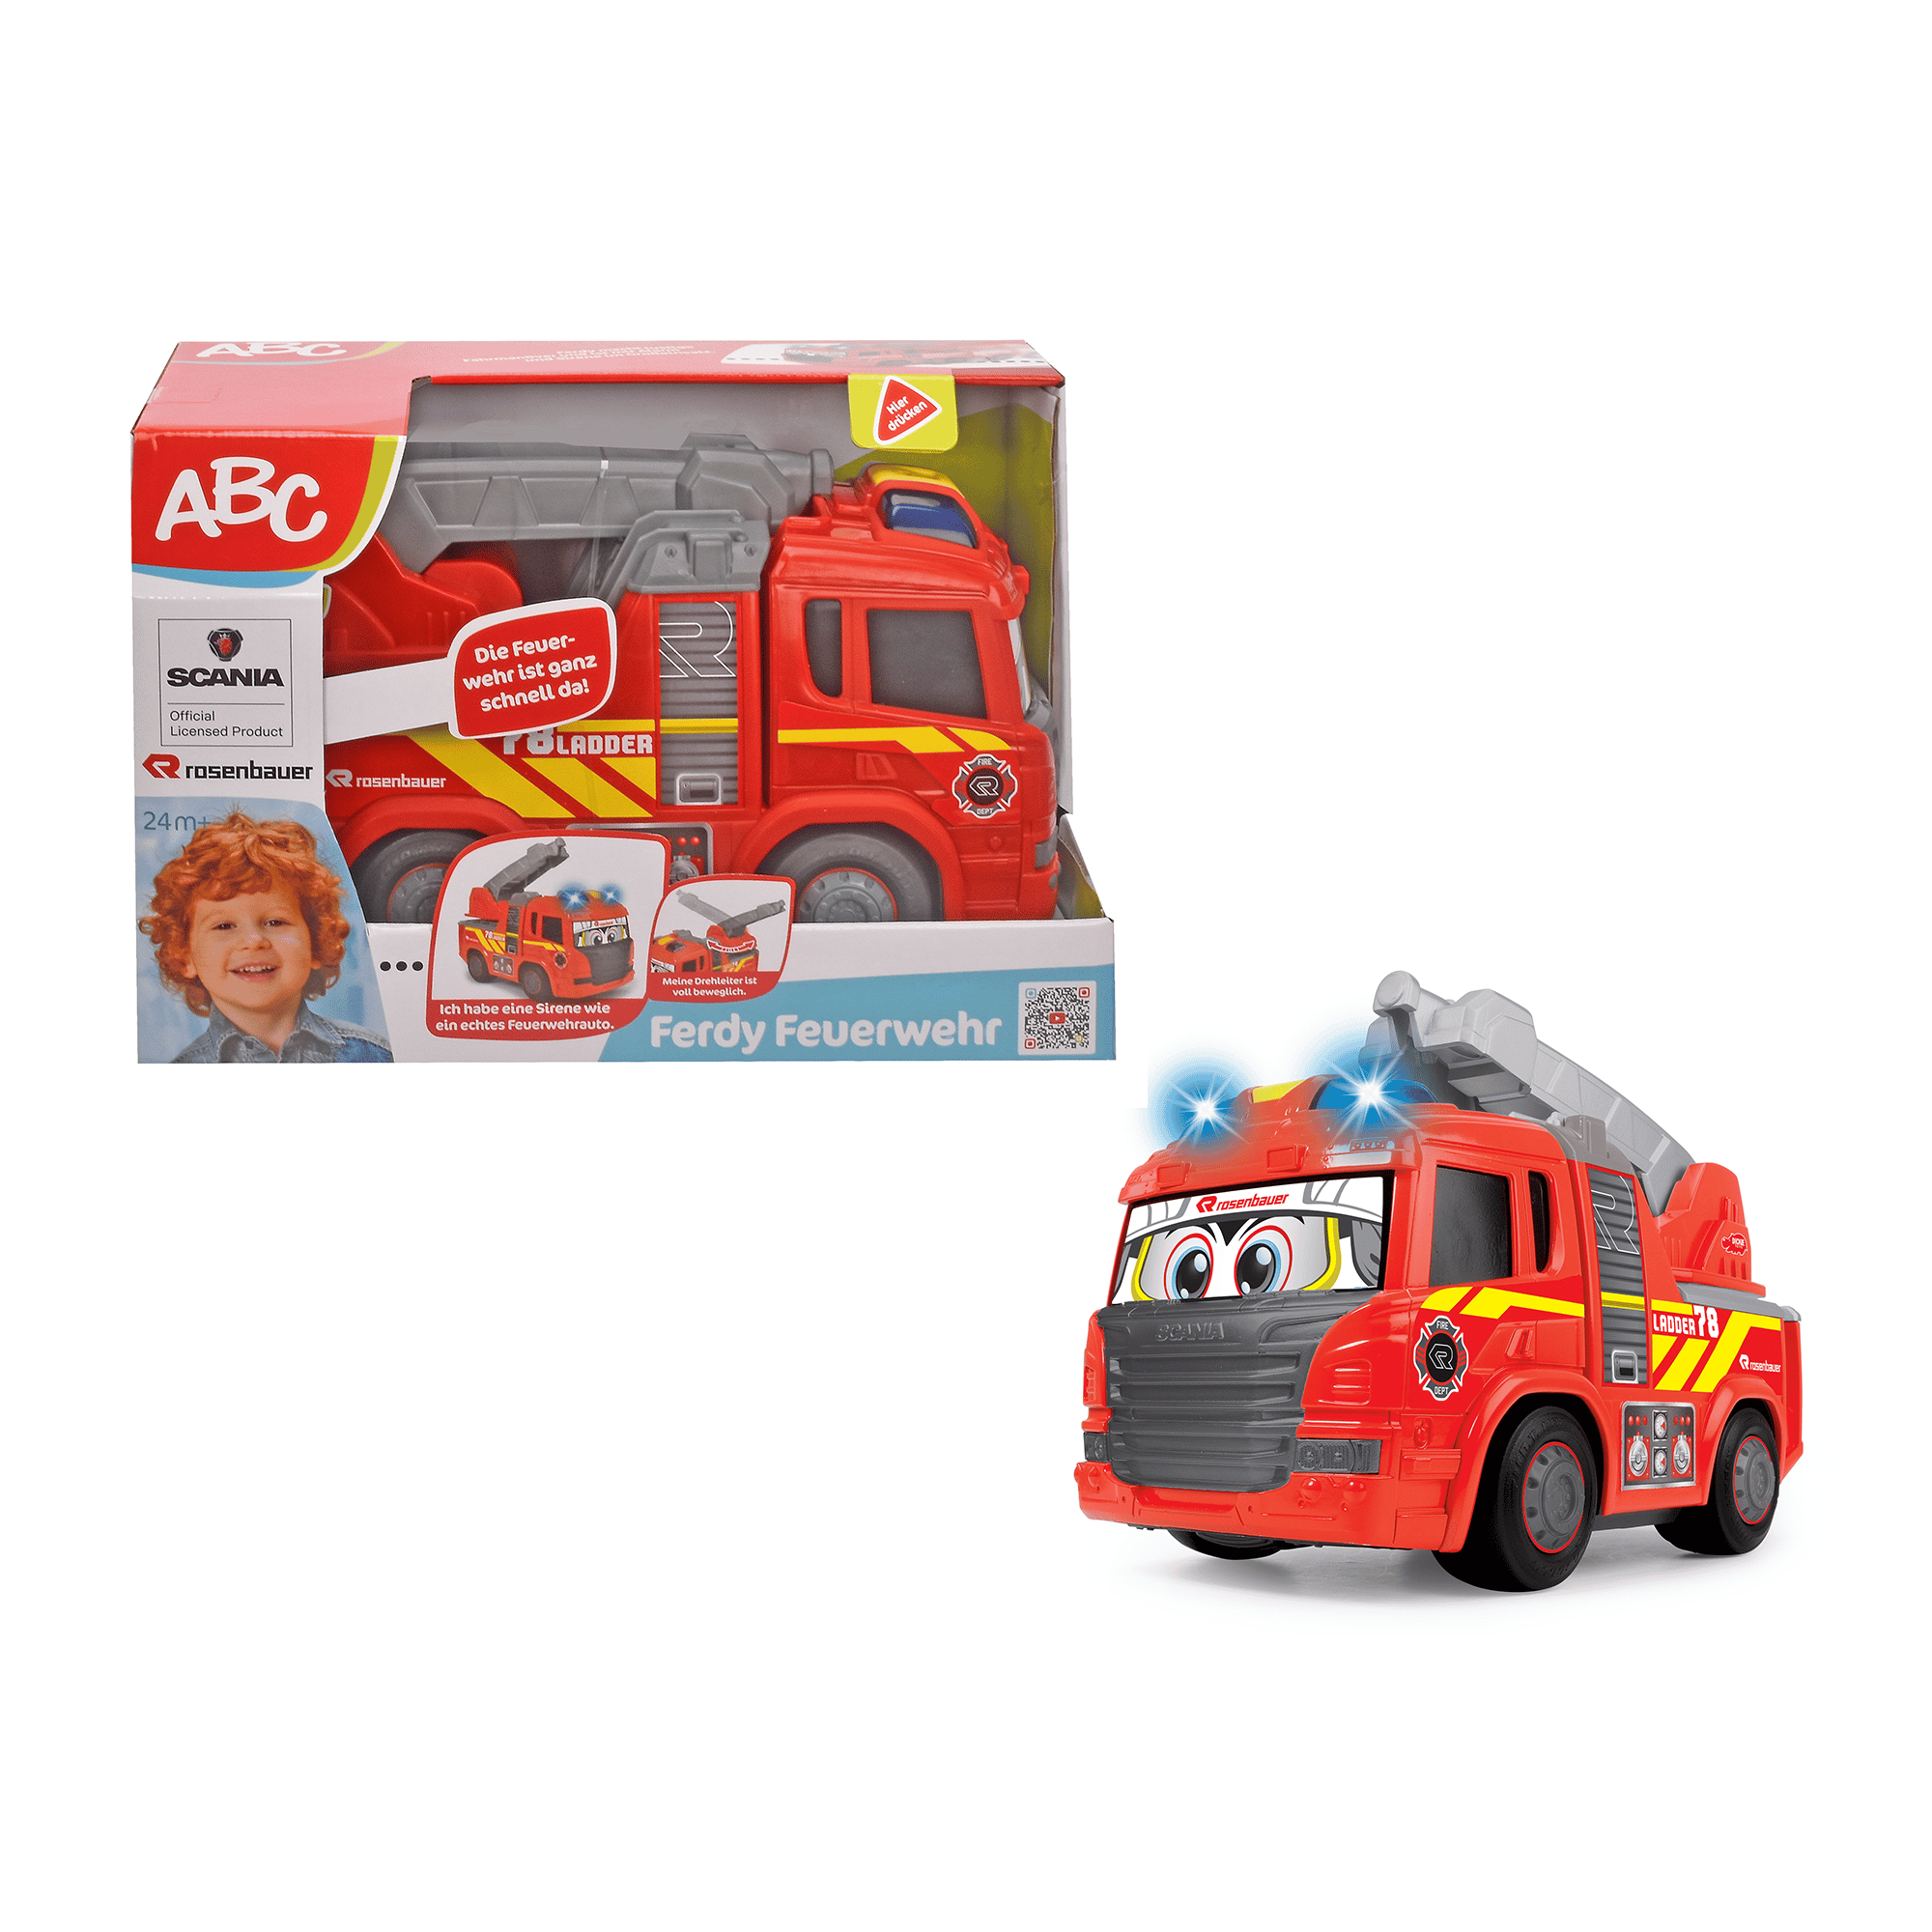 ABC Ferdy Feuerwehr 1 Simba Mehrfarbig Rot Gelb Grau Schwarz Weiß 2000580713206 1